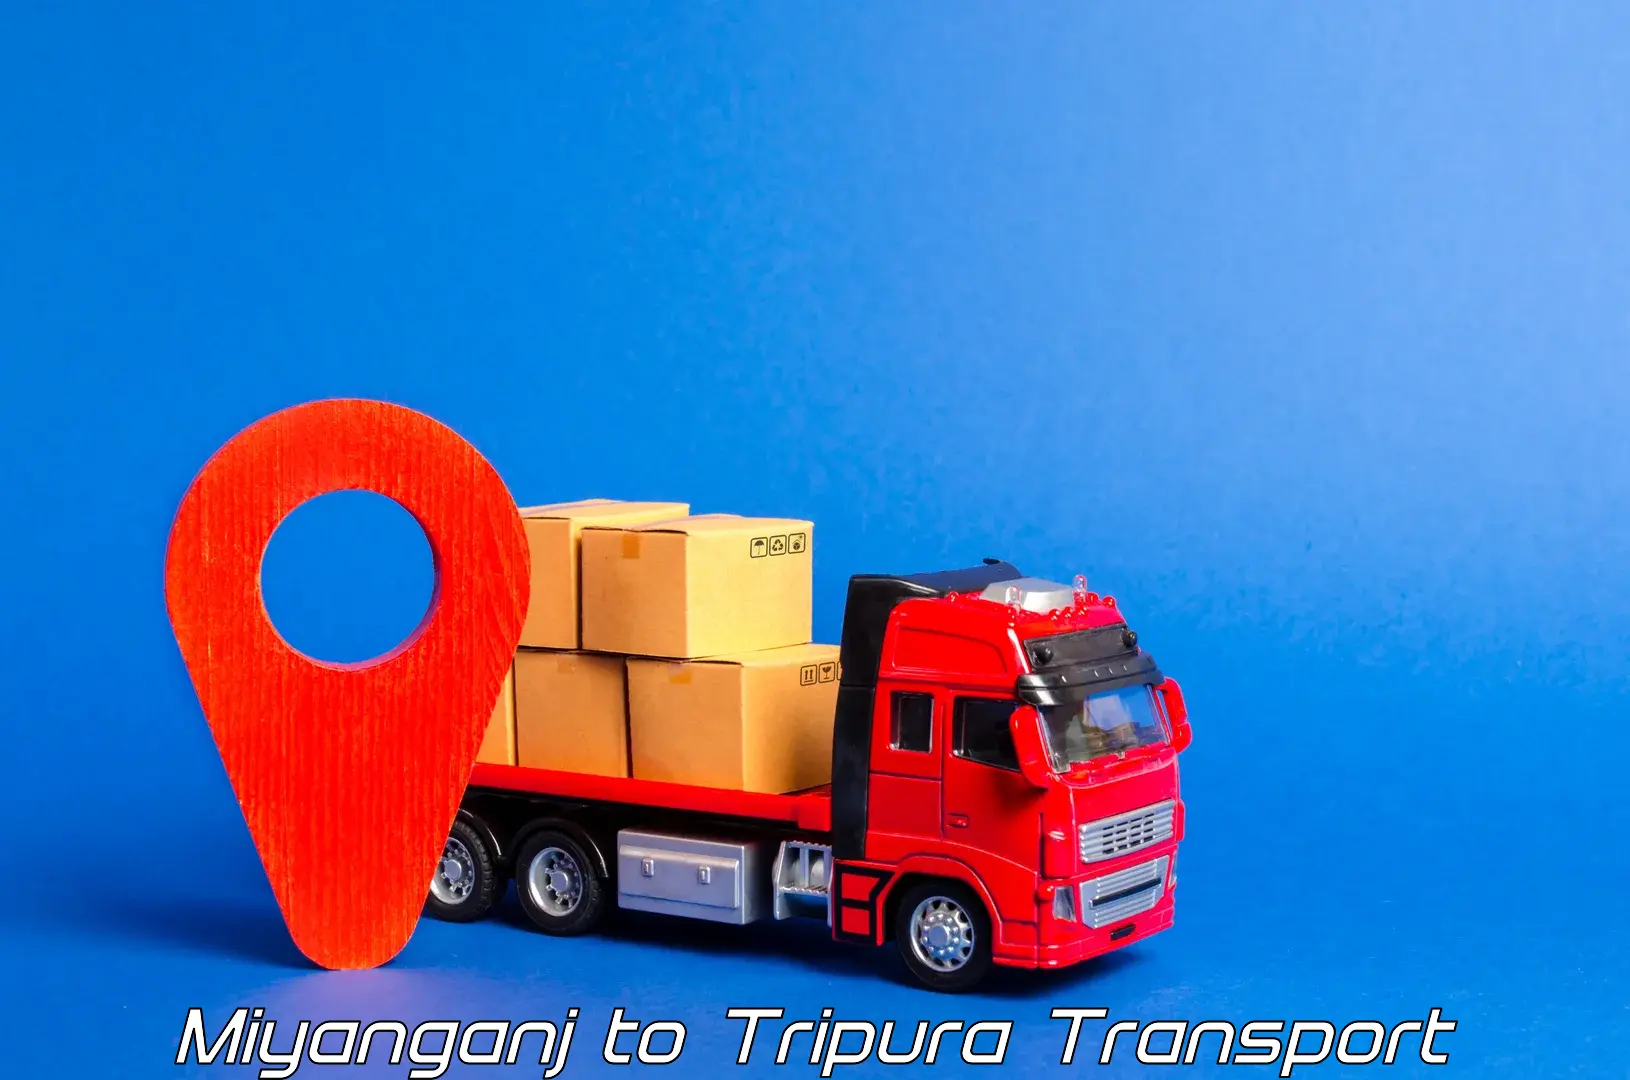 Daily transport service in Miyanganj to Kamalpur